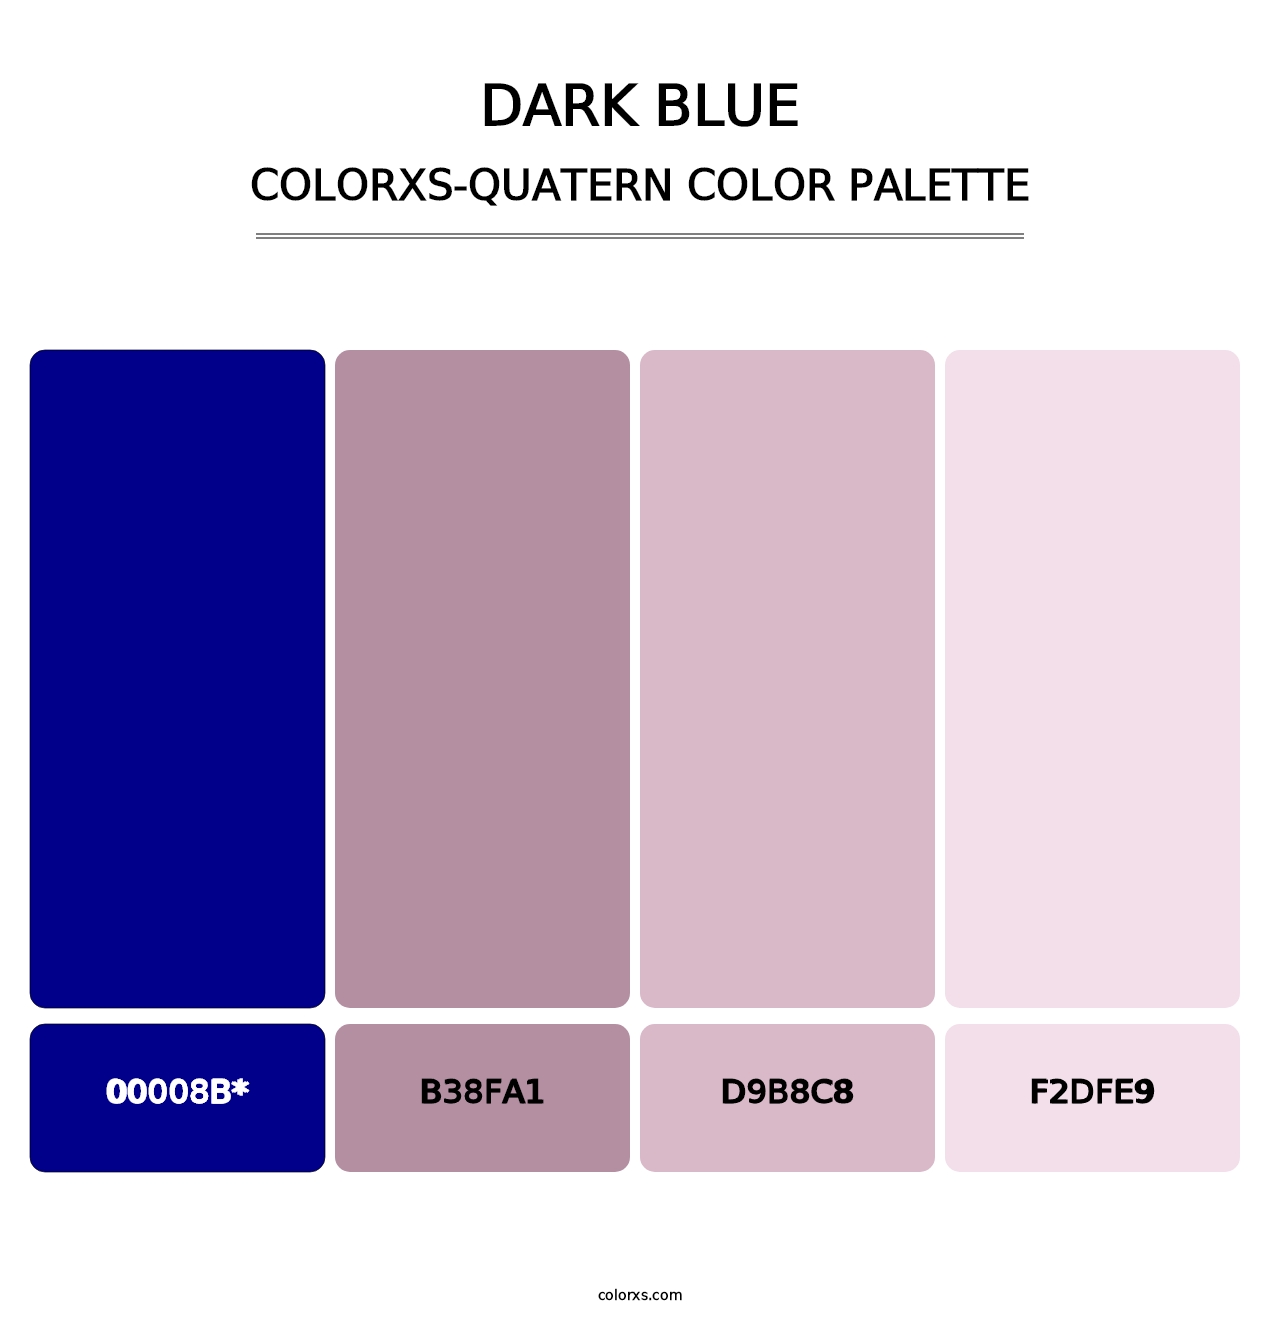 Dark Blue - Colorxs Quatern Palette